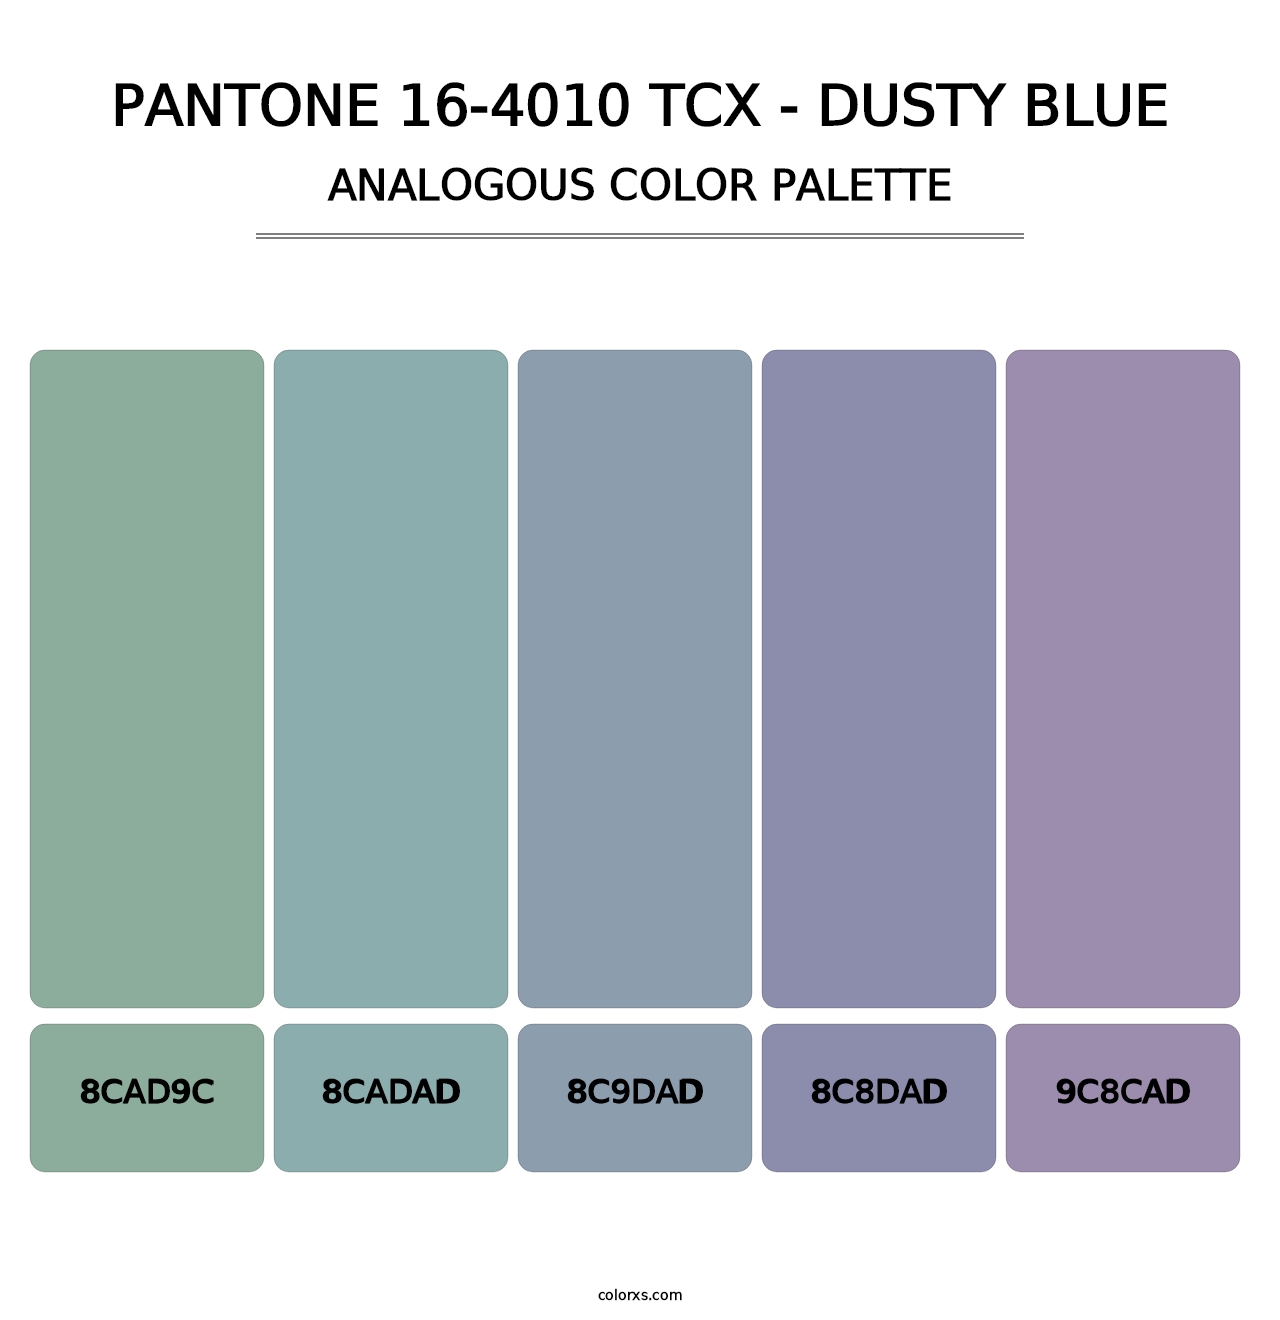 PANTONE 16-4010 TCX - Dusty Blue - Analogous Color Palette